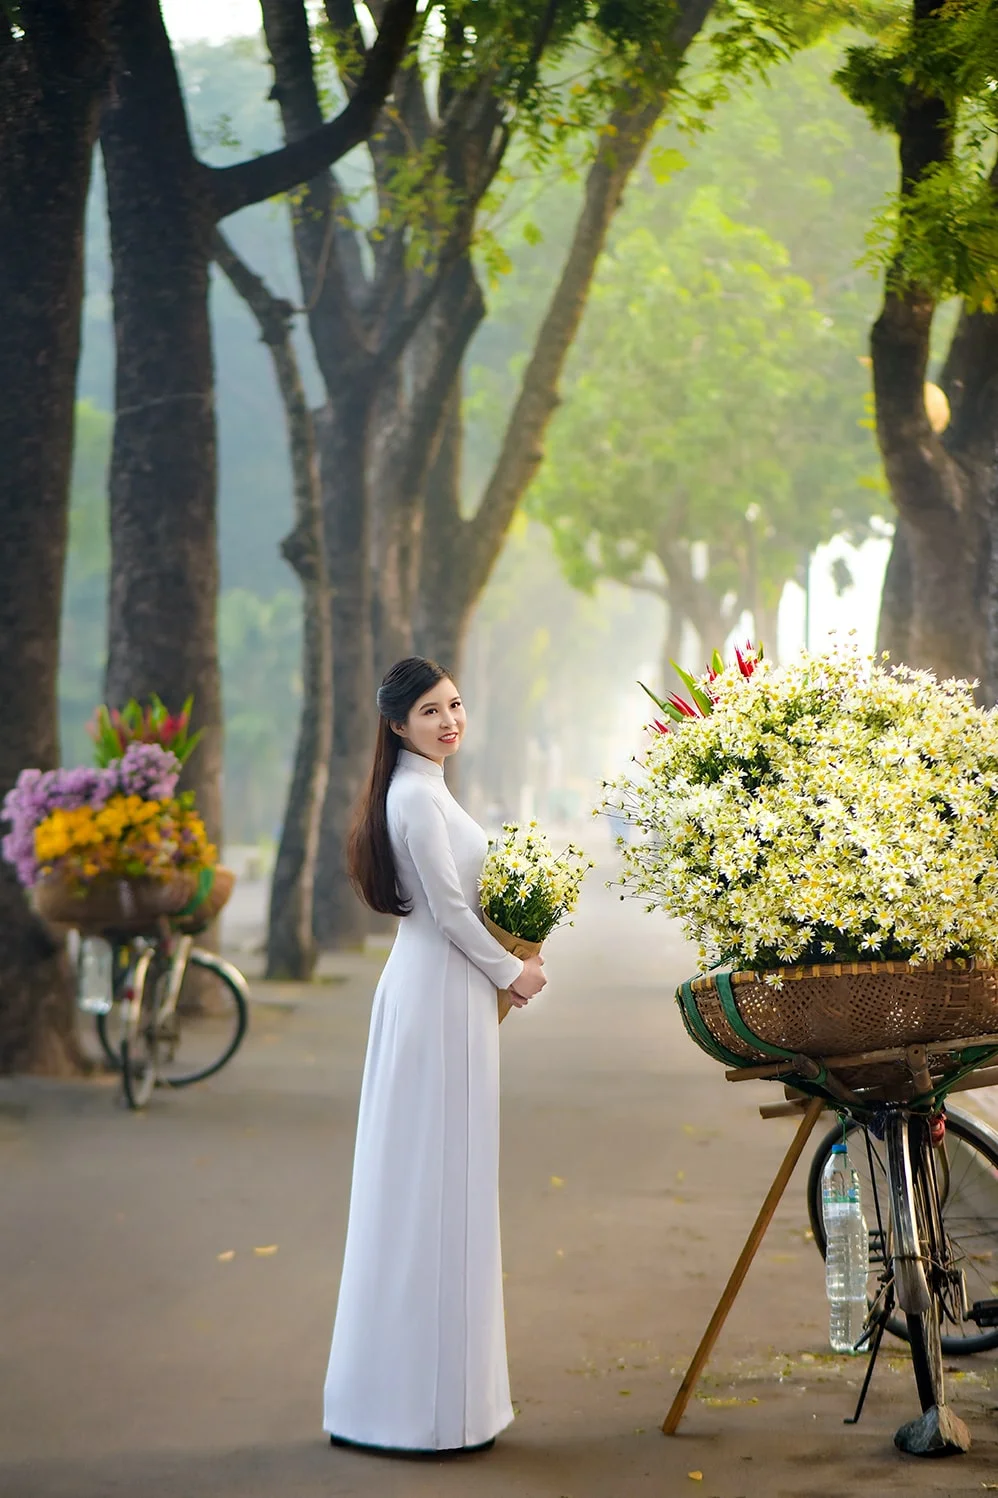 Giá dịch vụ chụp ảnh áo dài ngoại cảnh ở Hà Nội bao nhiêu